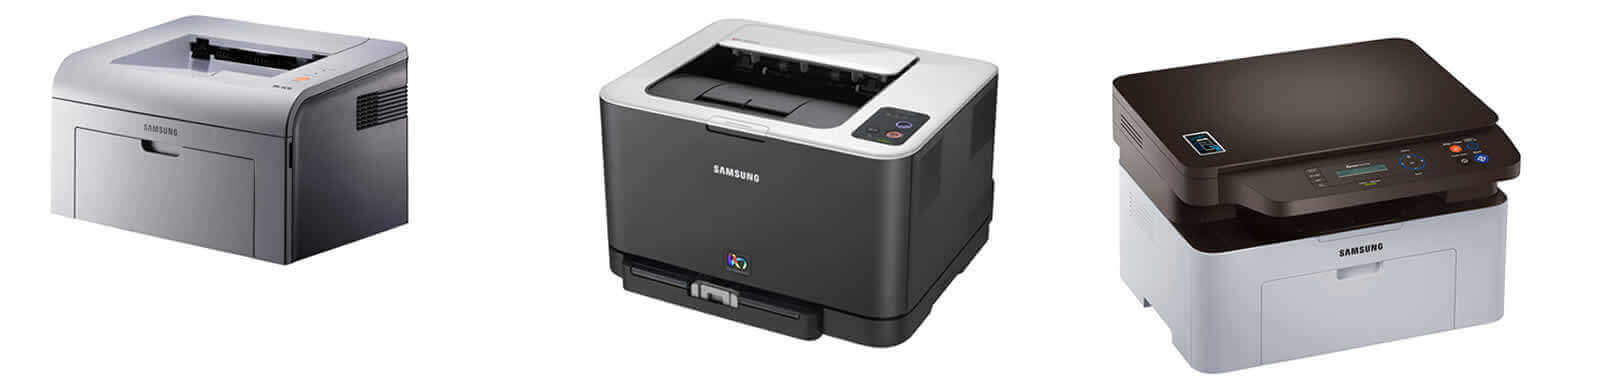 Outsourcing de Impressoras Samsung